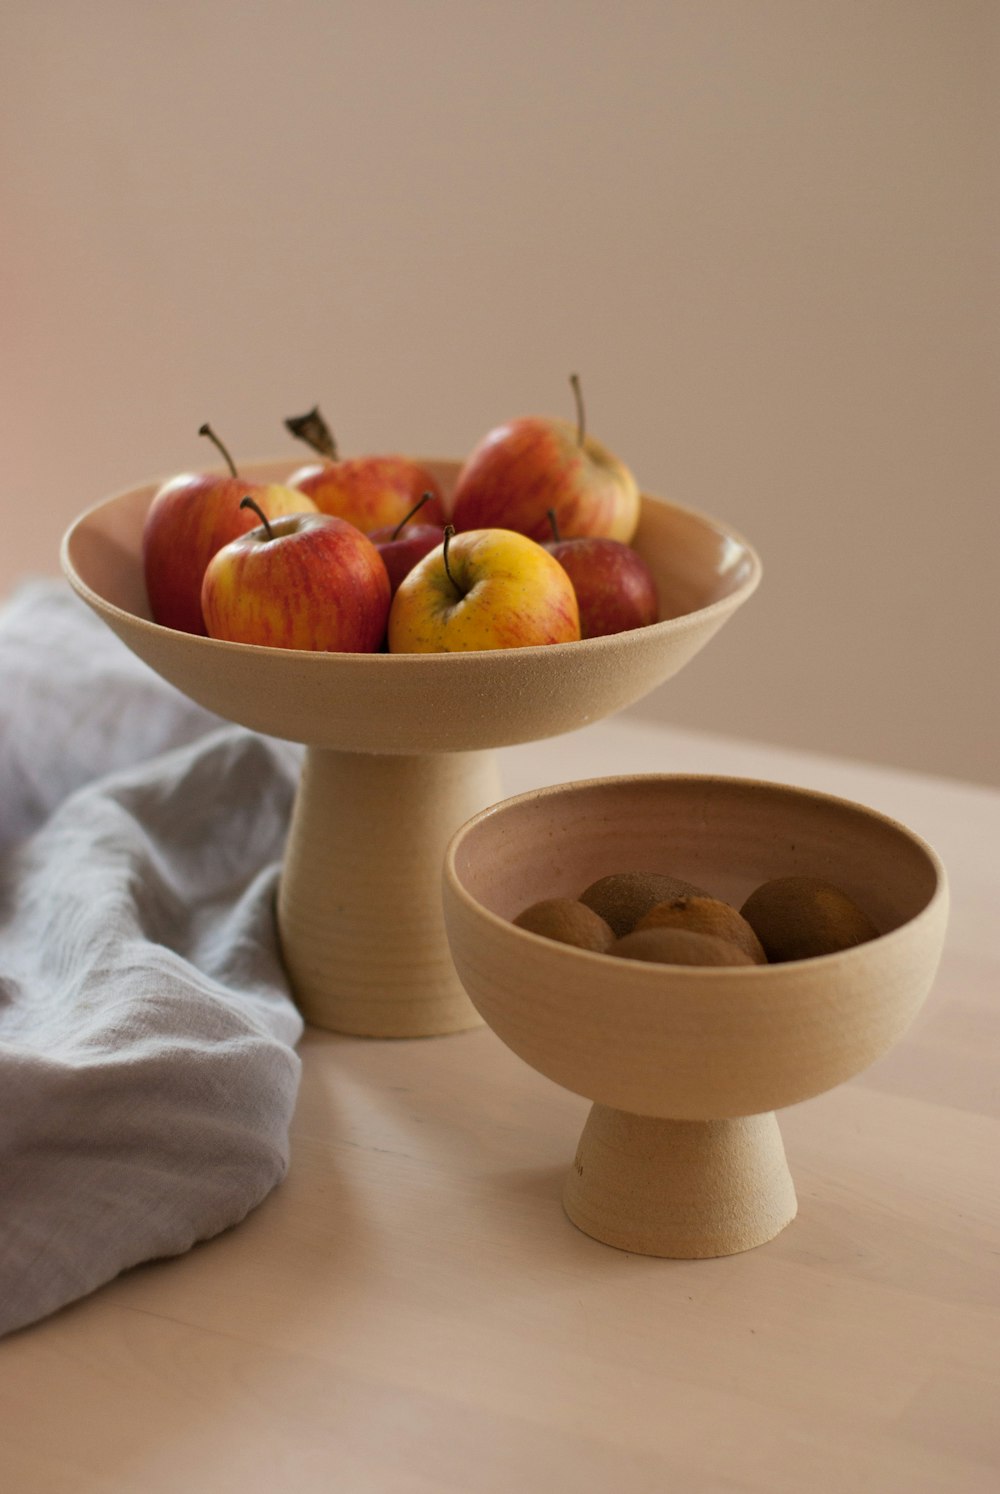 Un tazón de manzanas sentado en una mesa junto a un tazón de manzanas